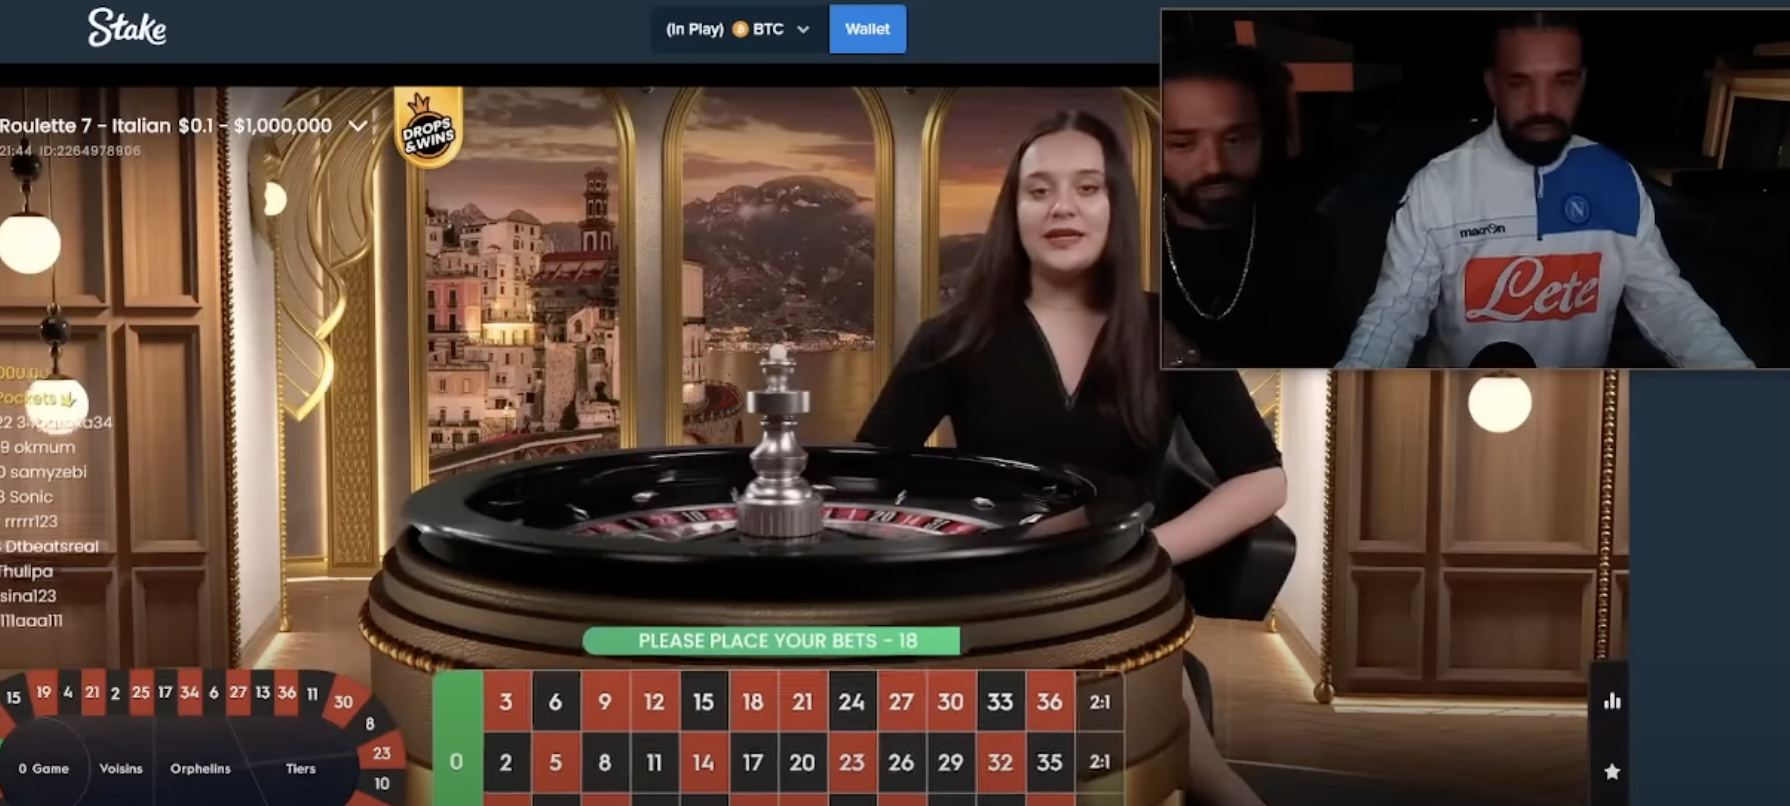 Drake devient un maître des jeux de casino sur Stake.com